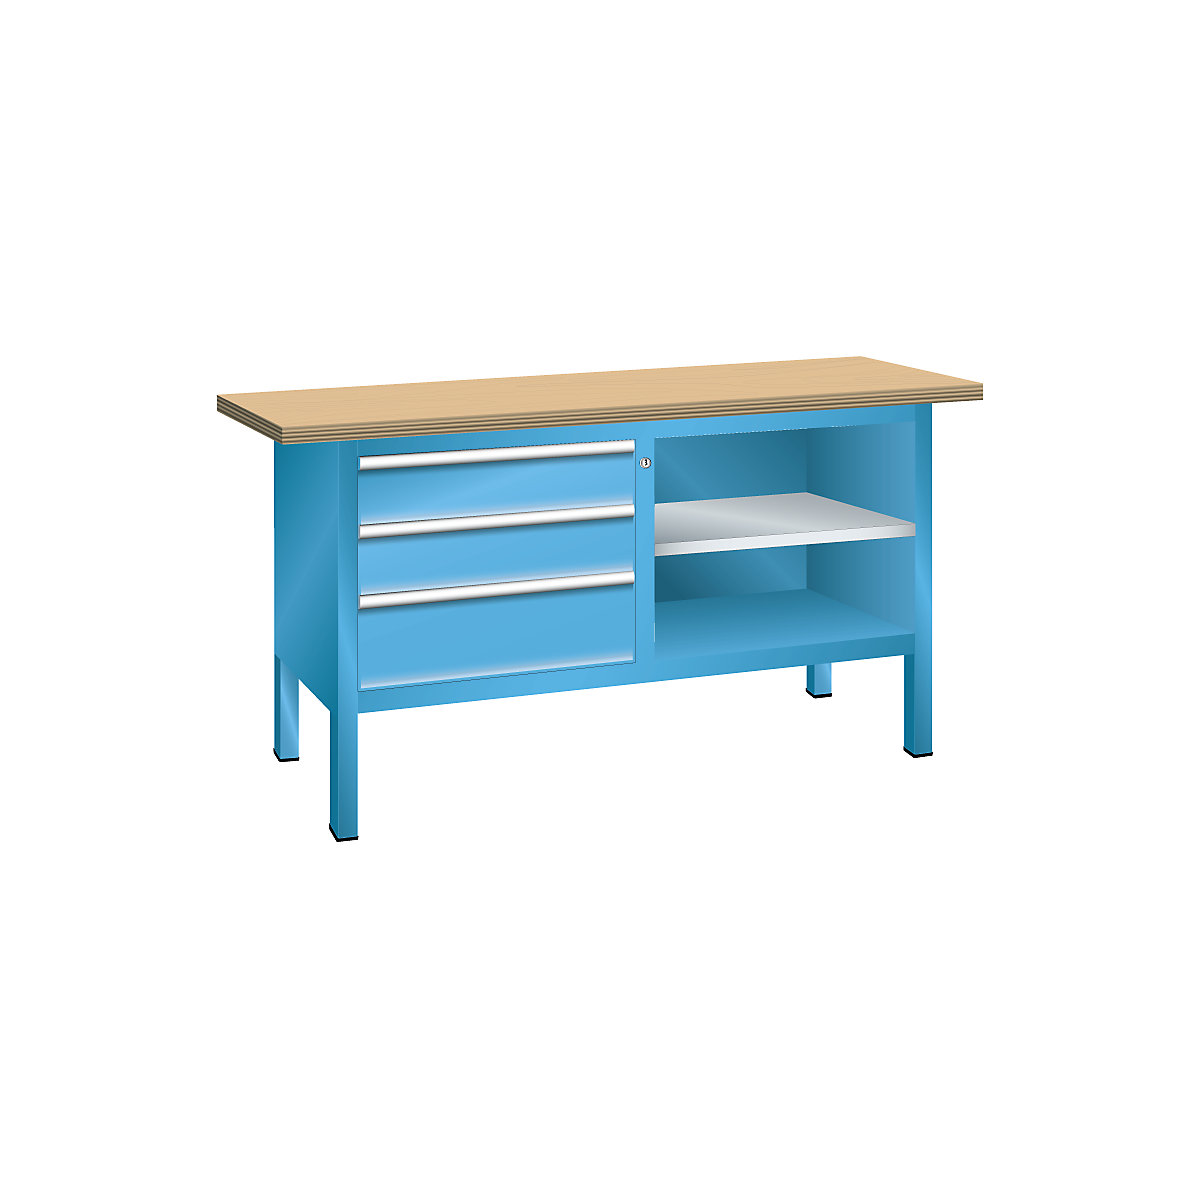 Stół warsztatowy, konstrukcja ramowa – LISTA, 3 szuflady, 2 półki, korpus jasnoniebieski, front jasnoniebieski-9